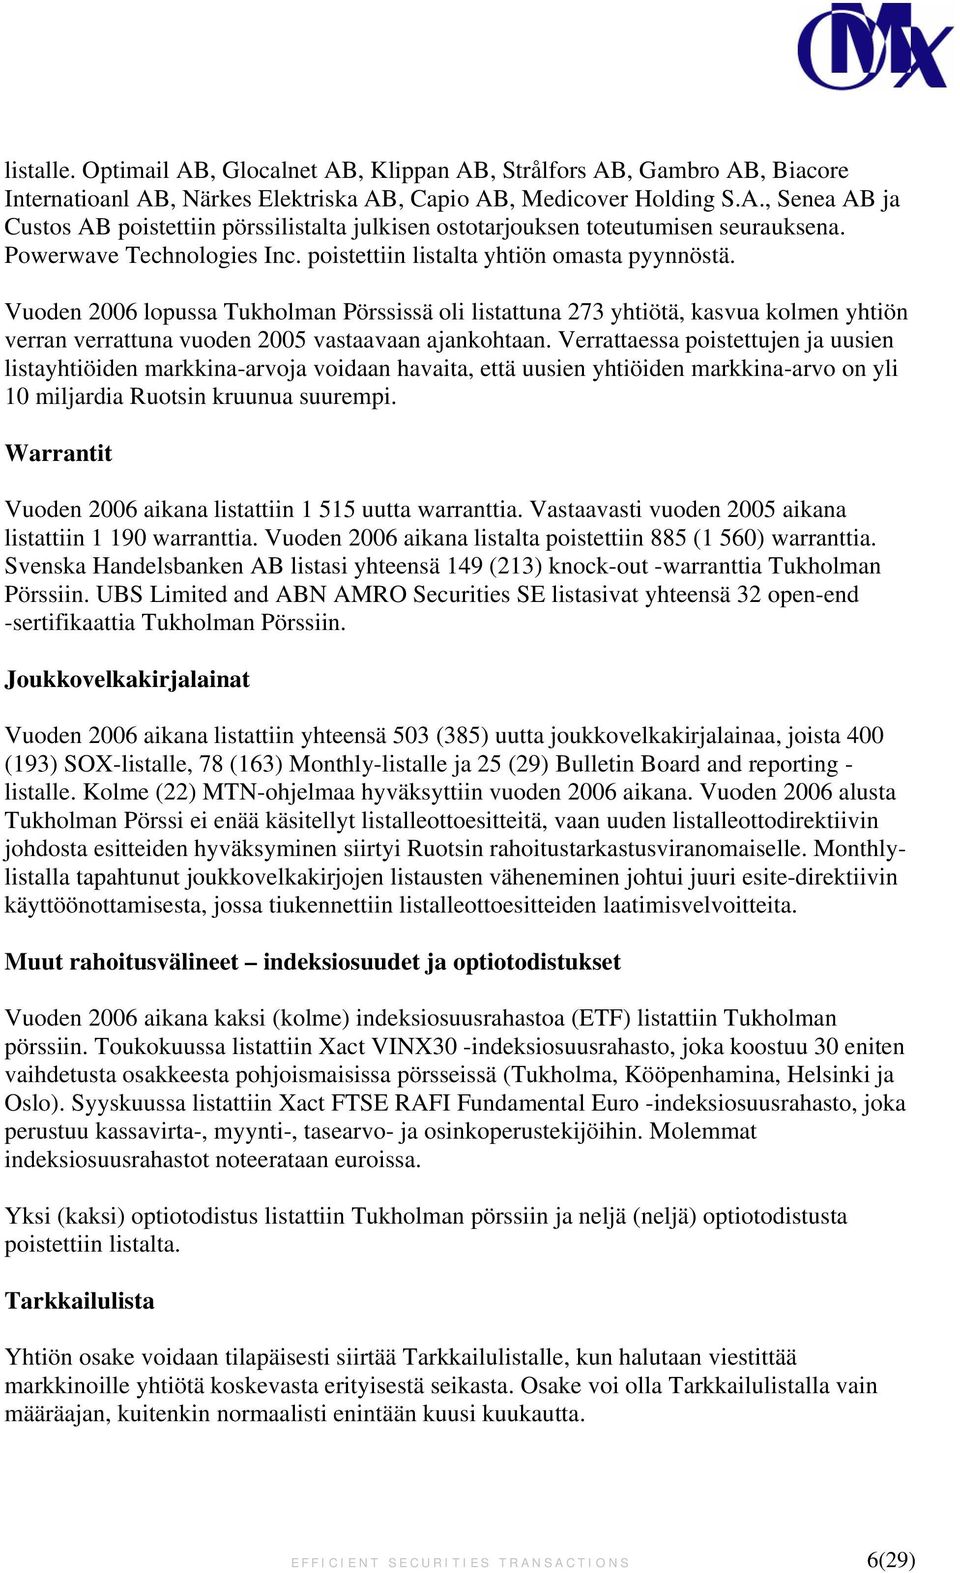 Vuoden 2006 lopussa Tukholman Pörssissä oli listattuna 273 yhtiötä, kasvua kolmen yhtiön verran verrattuna vuoden 2005 vastaavaan ajankohtaan.